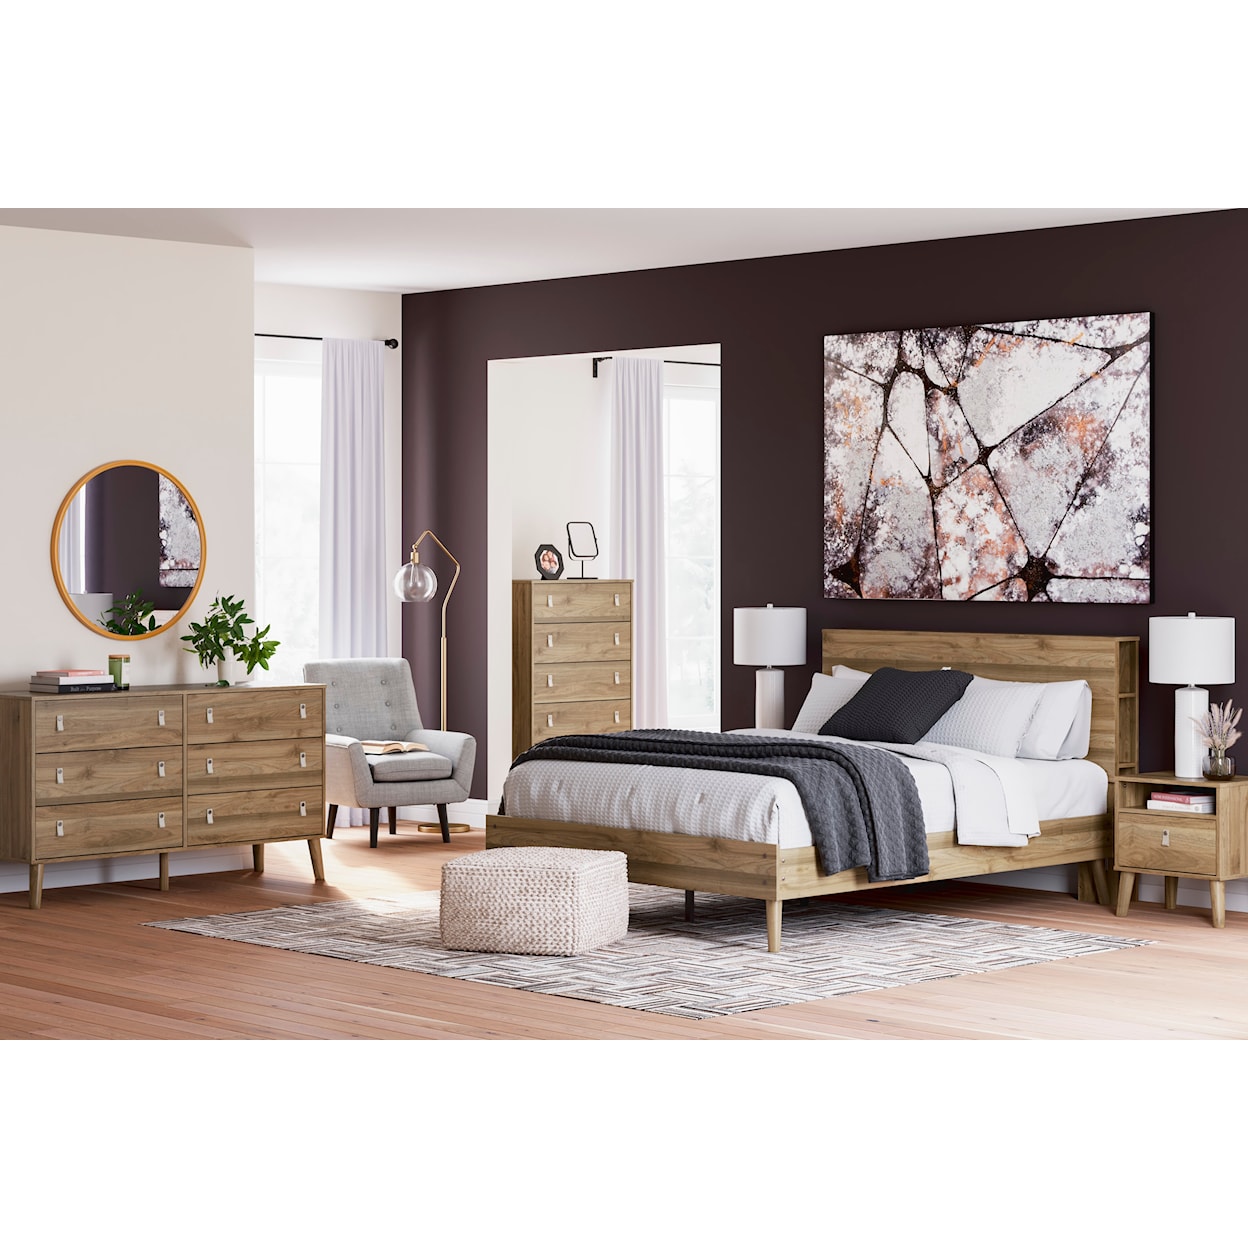 Ashley Furniture Signature Design Aprilyn Queen Bedroom Set